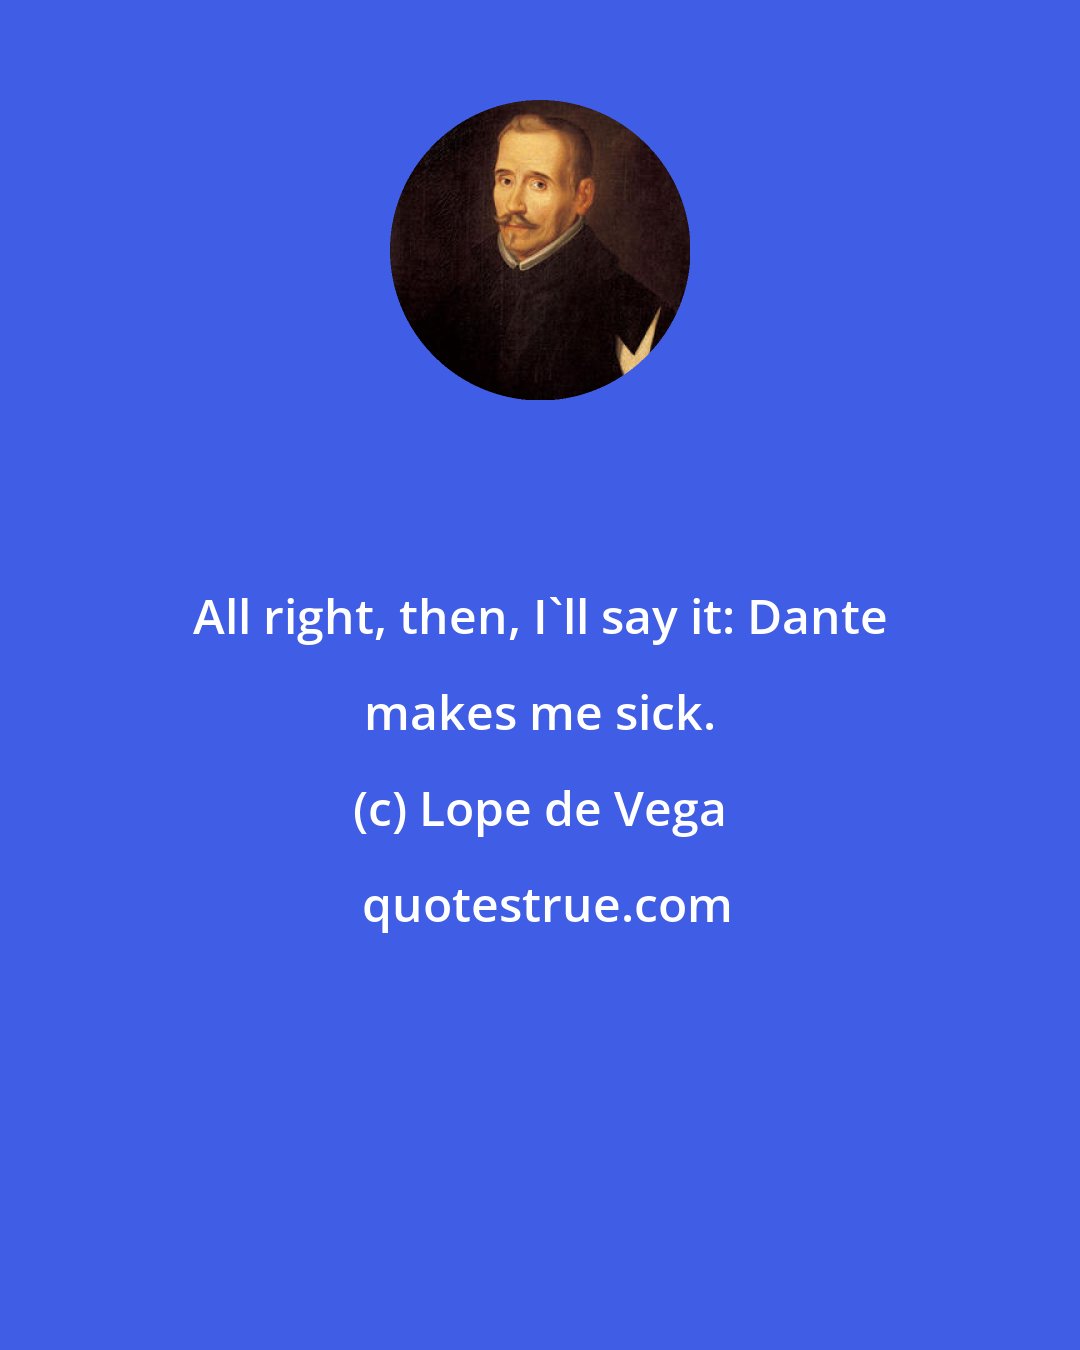 Lope de Vega: All right, then, I'll say it: Dante makes me sick.